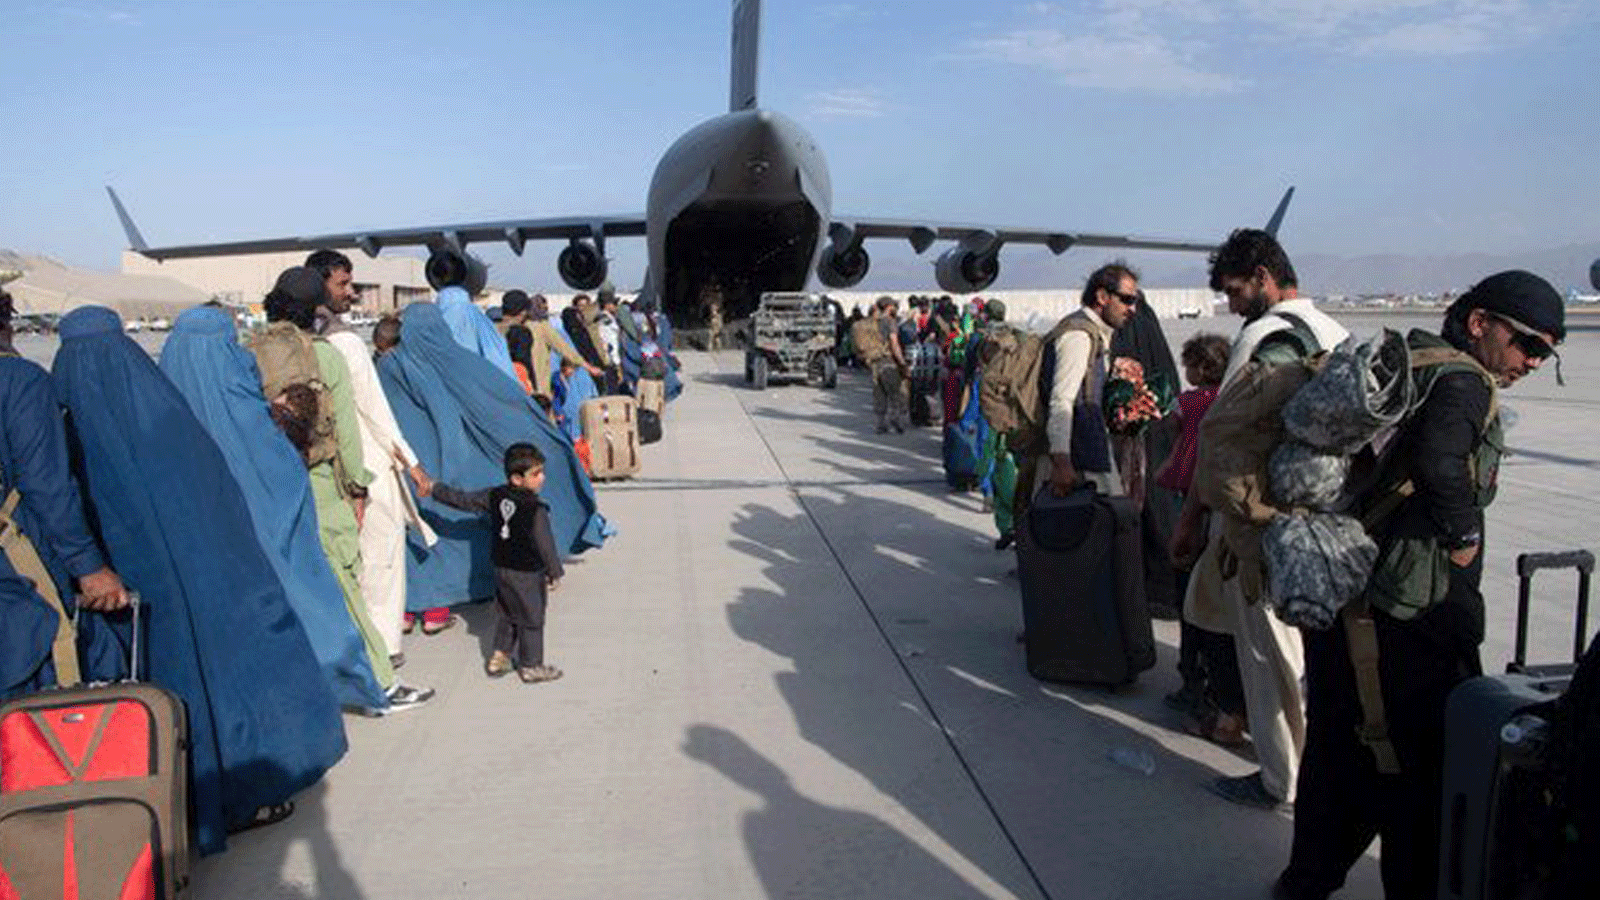 ركاب يصطفون في طابور لركوب طائرة تابعة للقوات الجوية الأمريكية C-17 Globemaster III في مطار حامد كرزاي الدولي في كابول/ أفغانستان في 24 آب/ أغسطس 2021